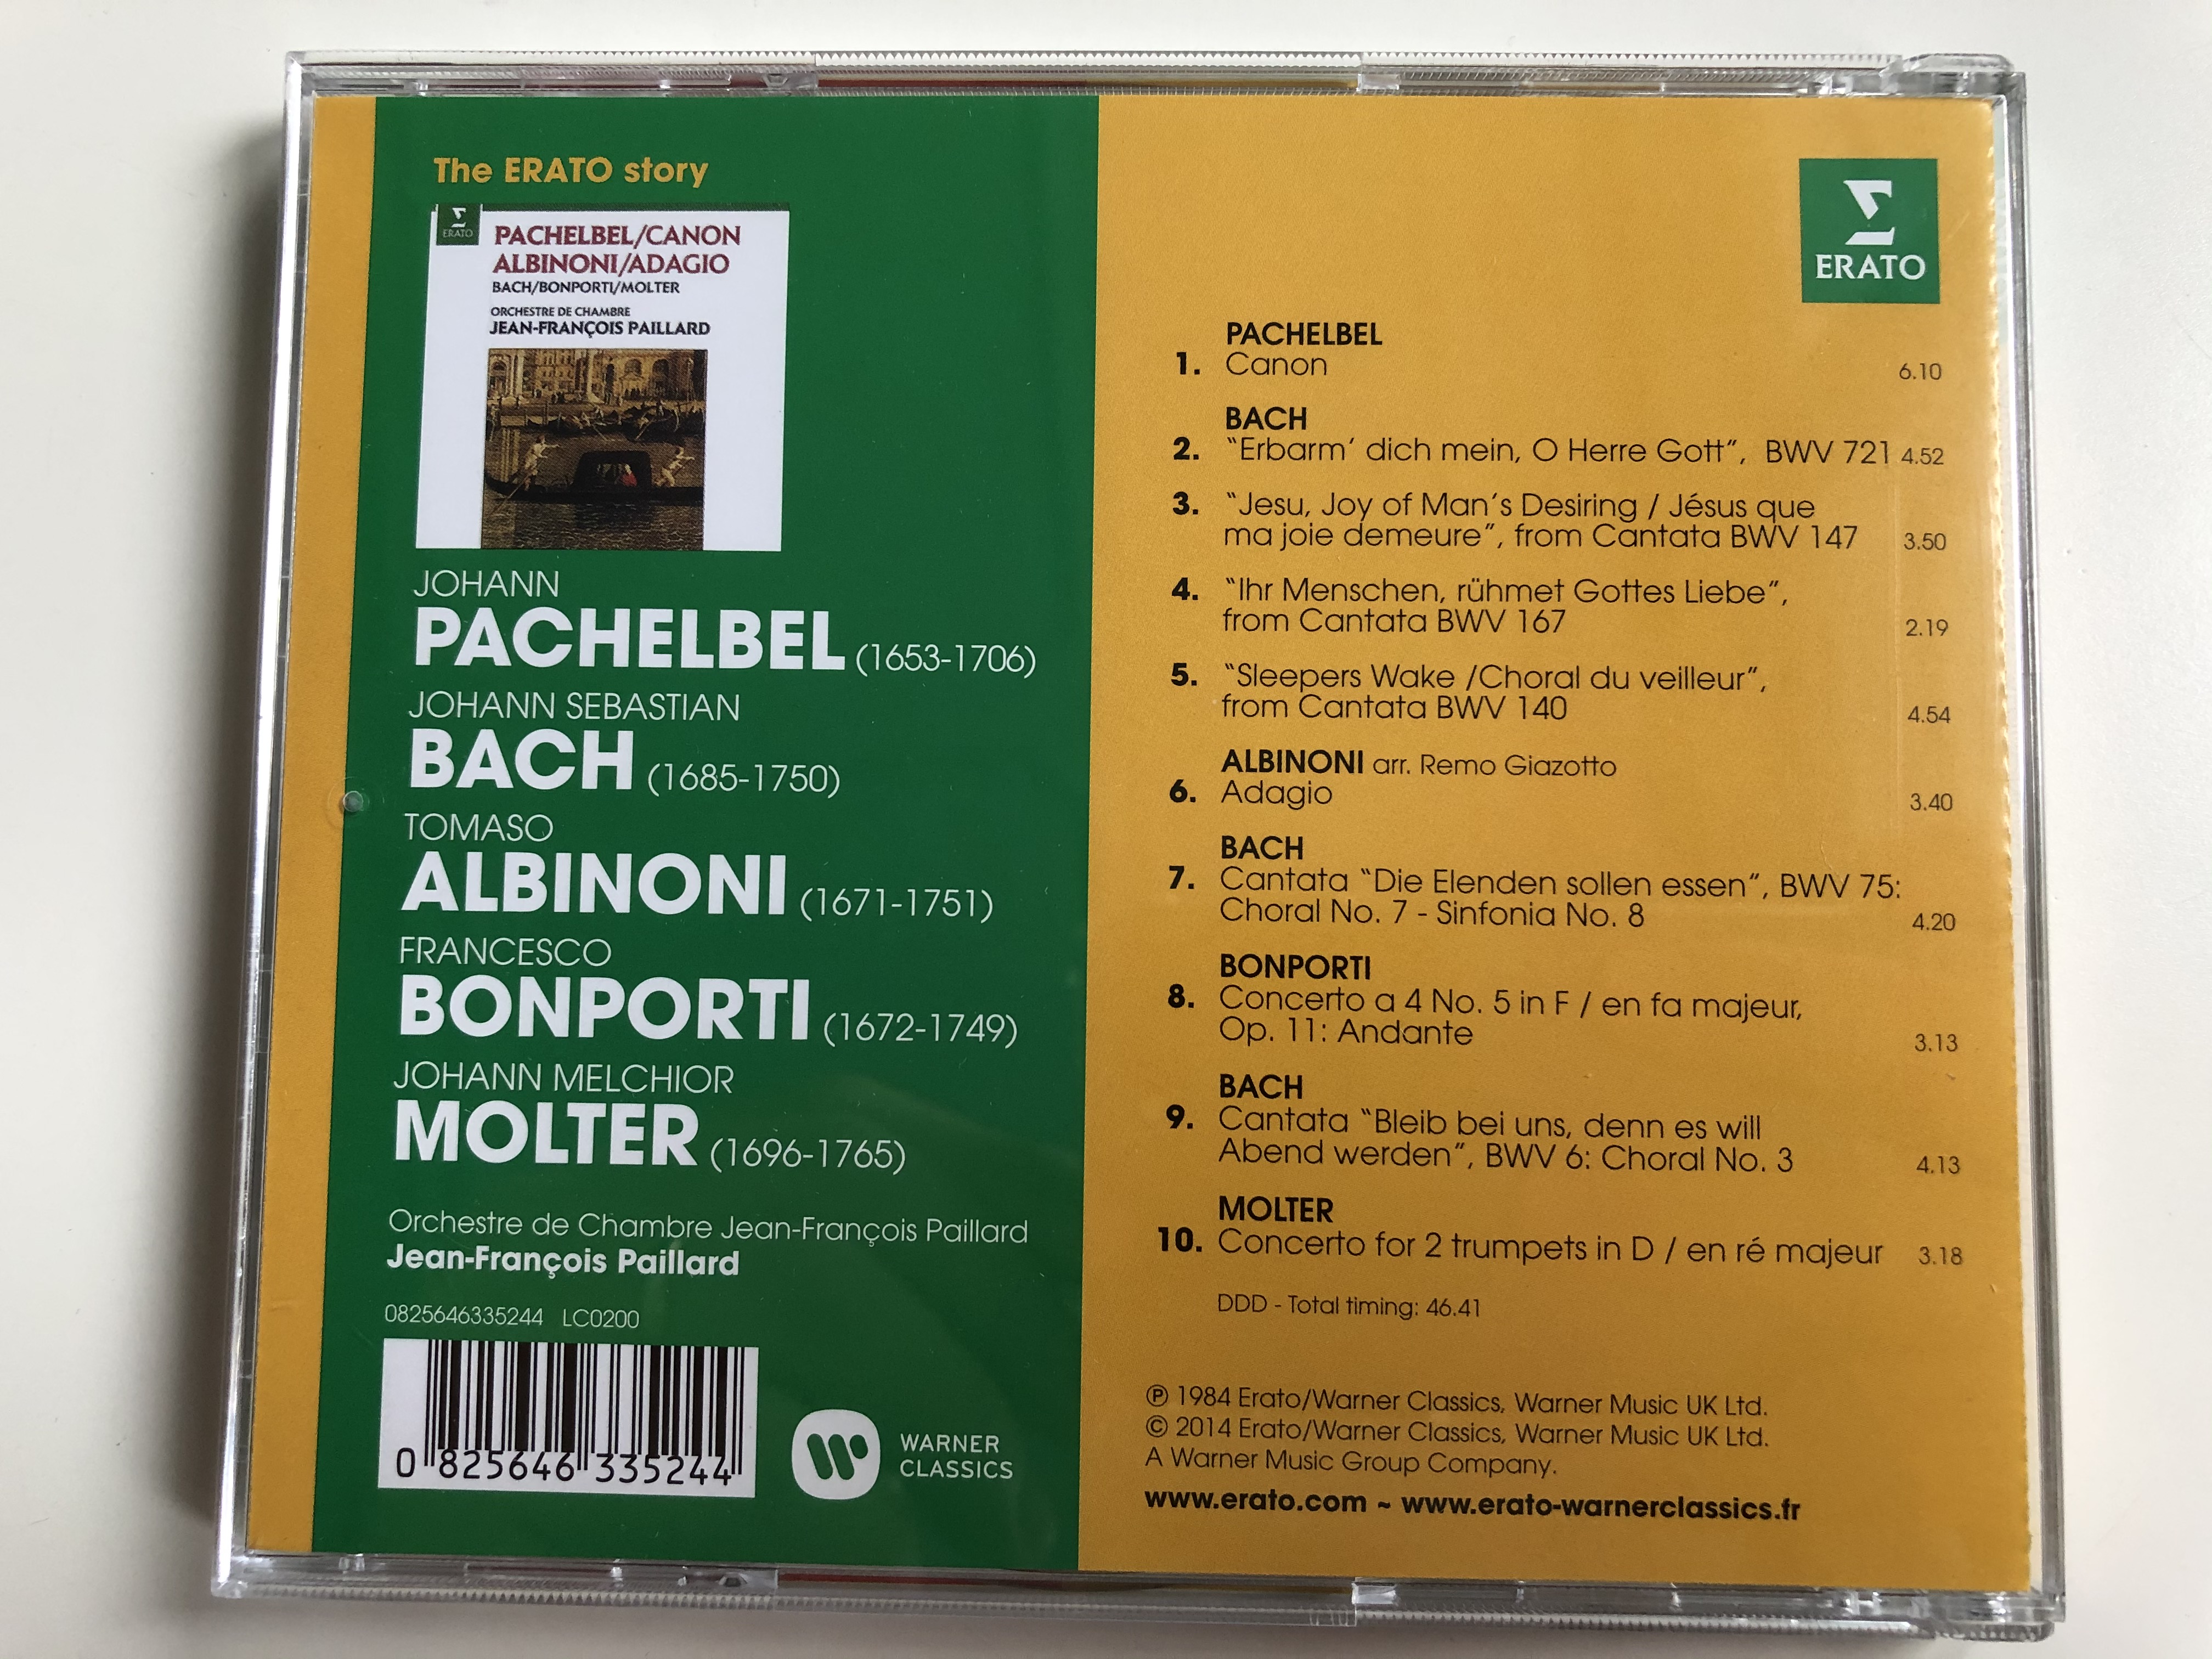 pachelbel-canon-albinoni-adagio-bach-bonporti-molter-orchestre-de-chambre-jean-francois-paillard-erato-audio-cd-2014-0825646335244-5-.jpg